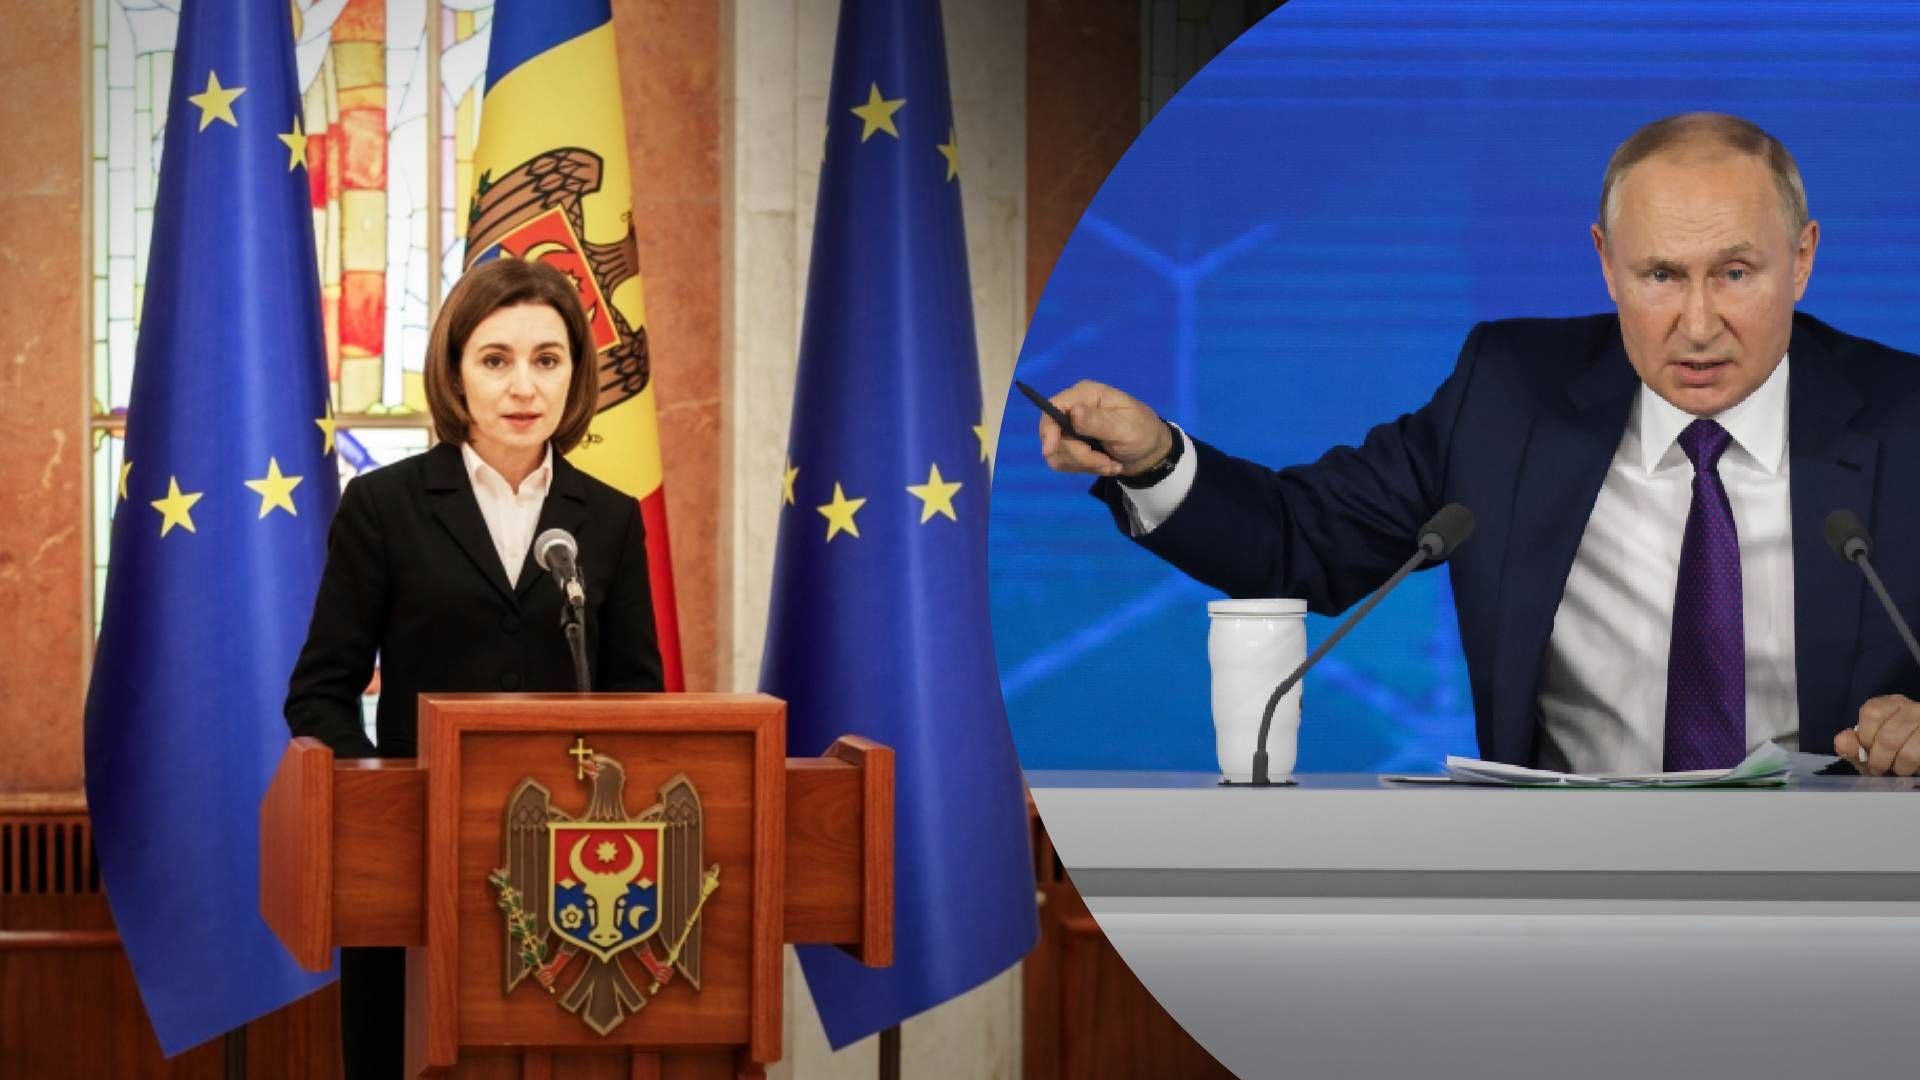 Попытка переворота в Молдове - удастся ли России дестабилизировать ситуацию в Молдове